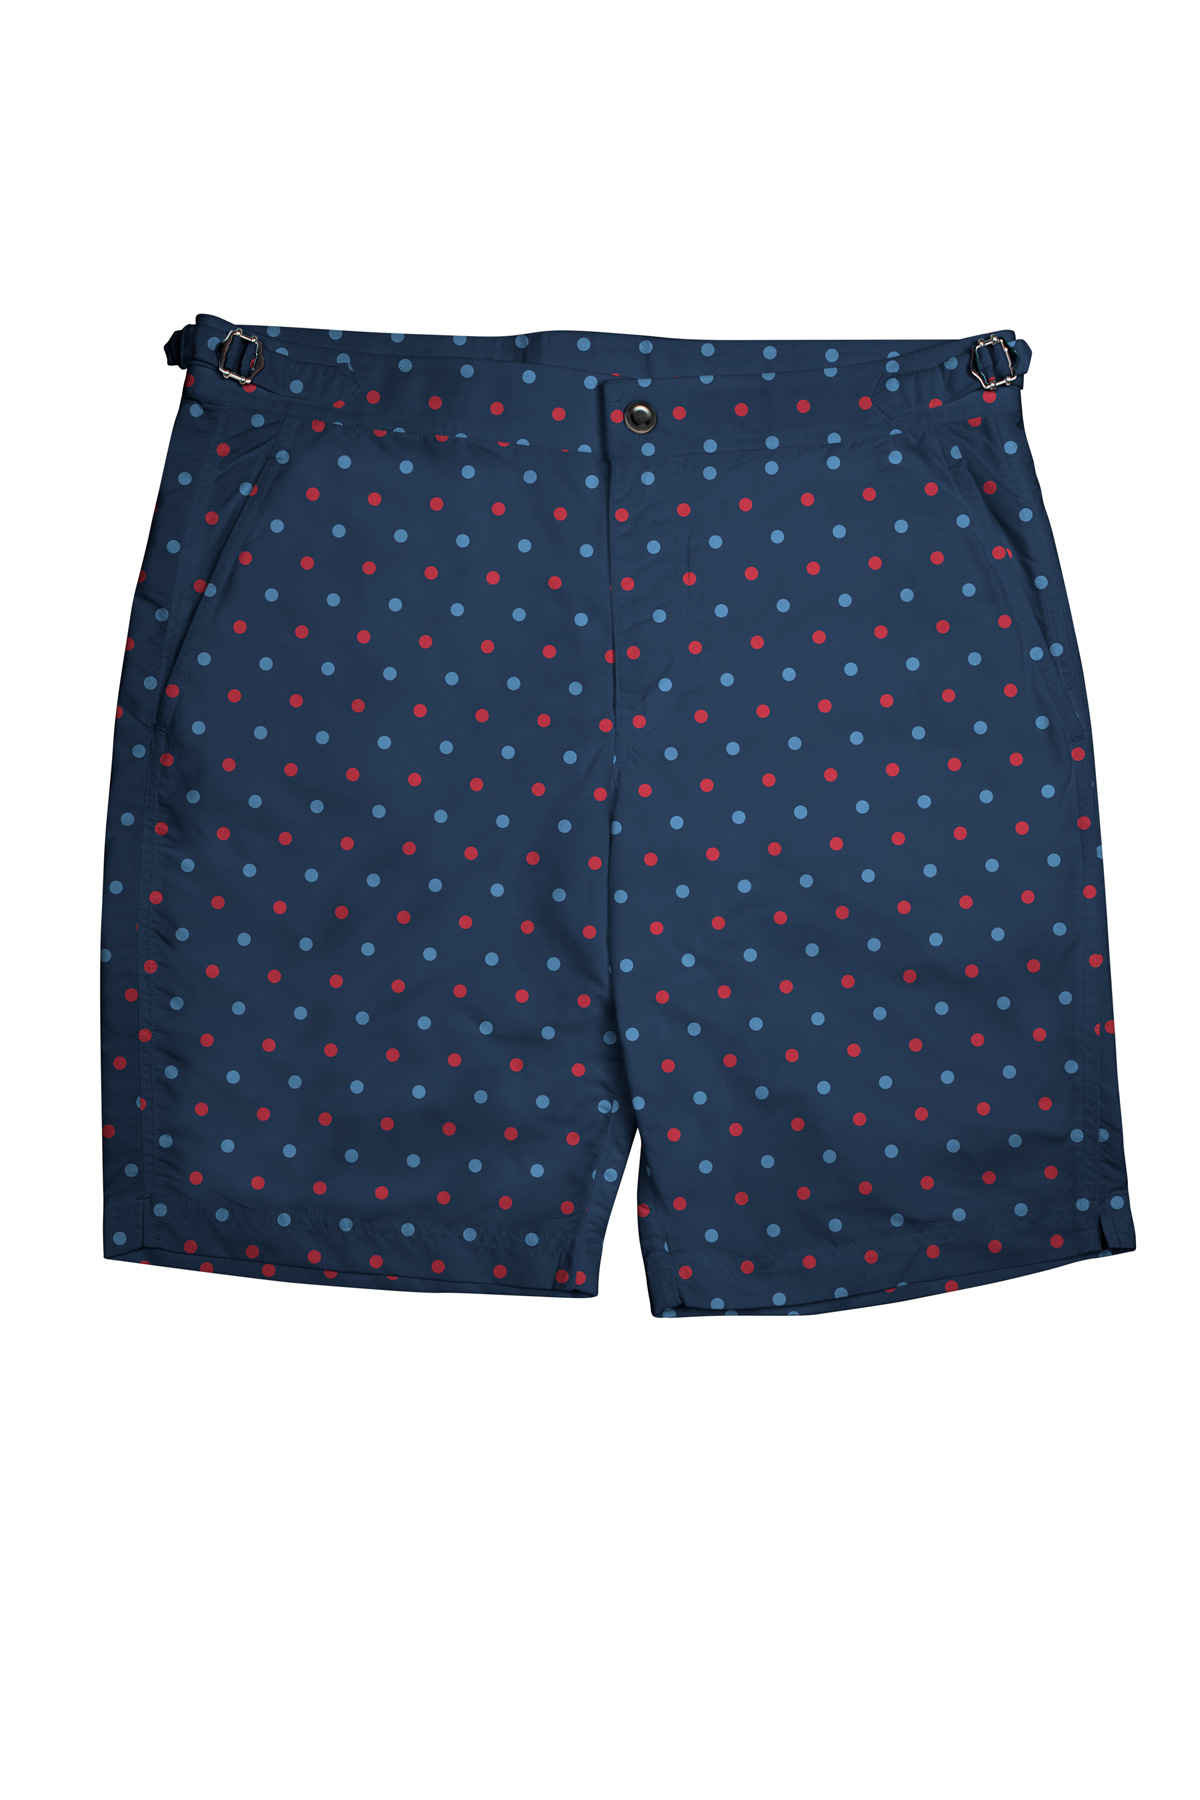 Blue/Red Polka Dots on Navy Swim Shorts